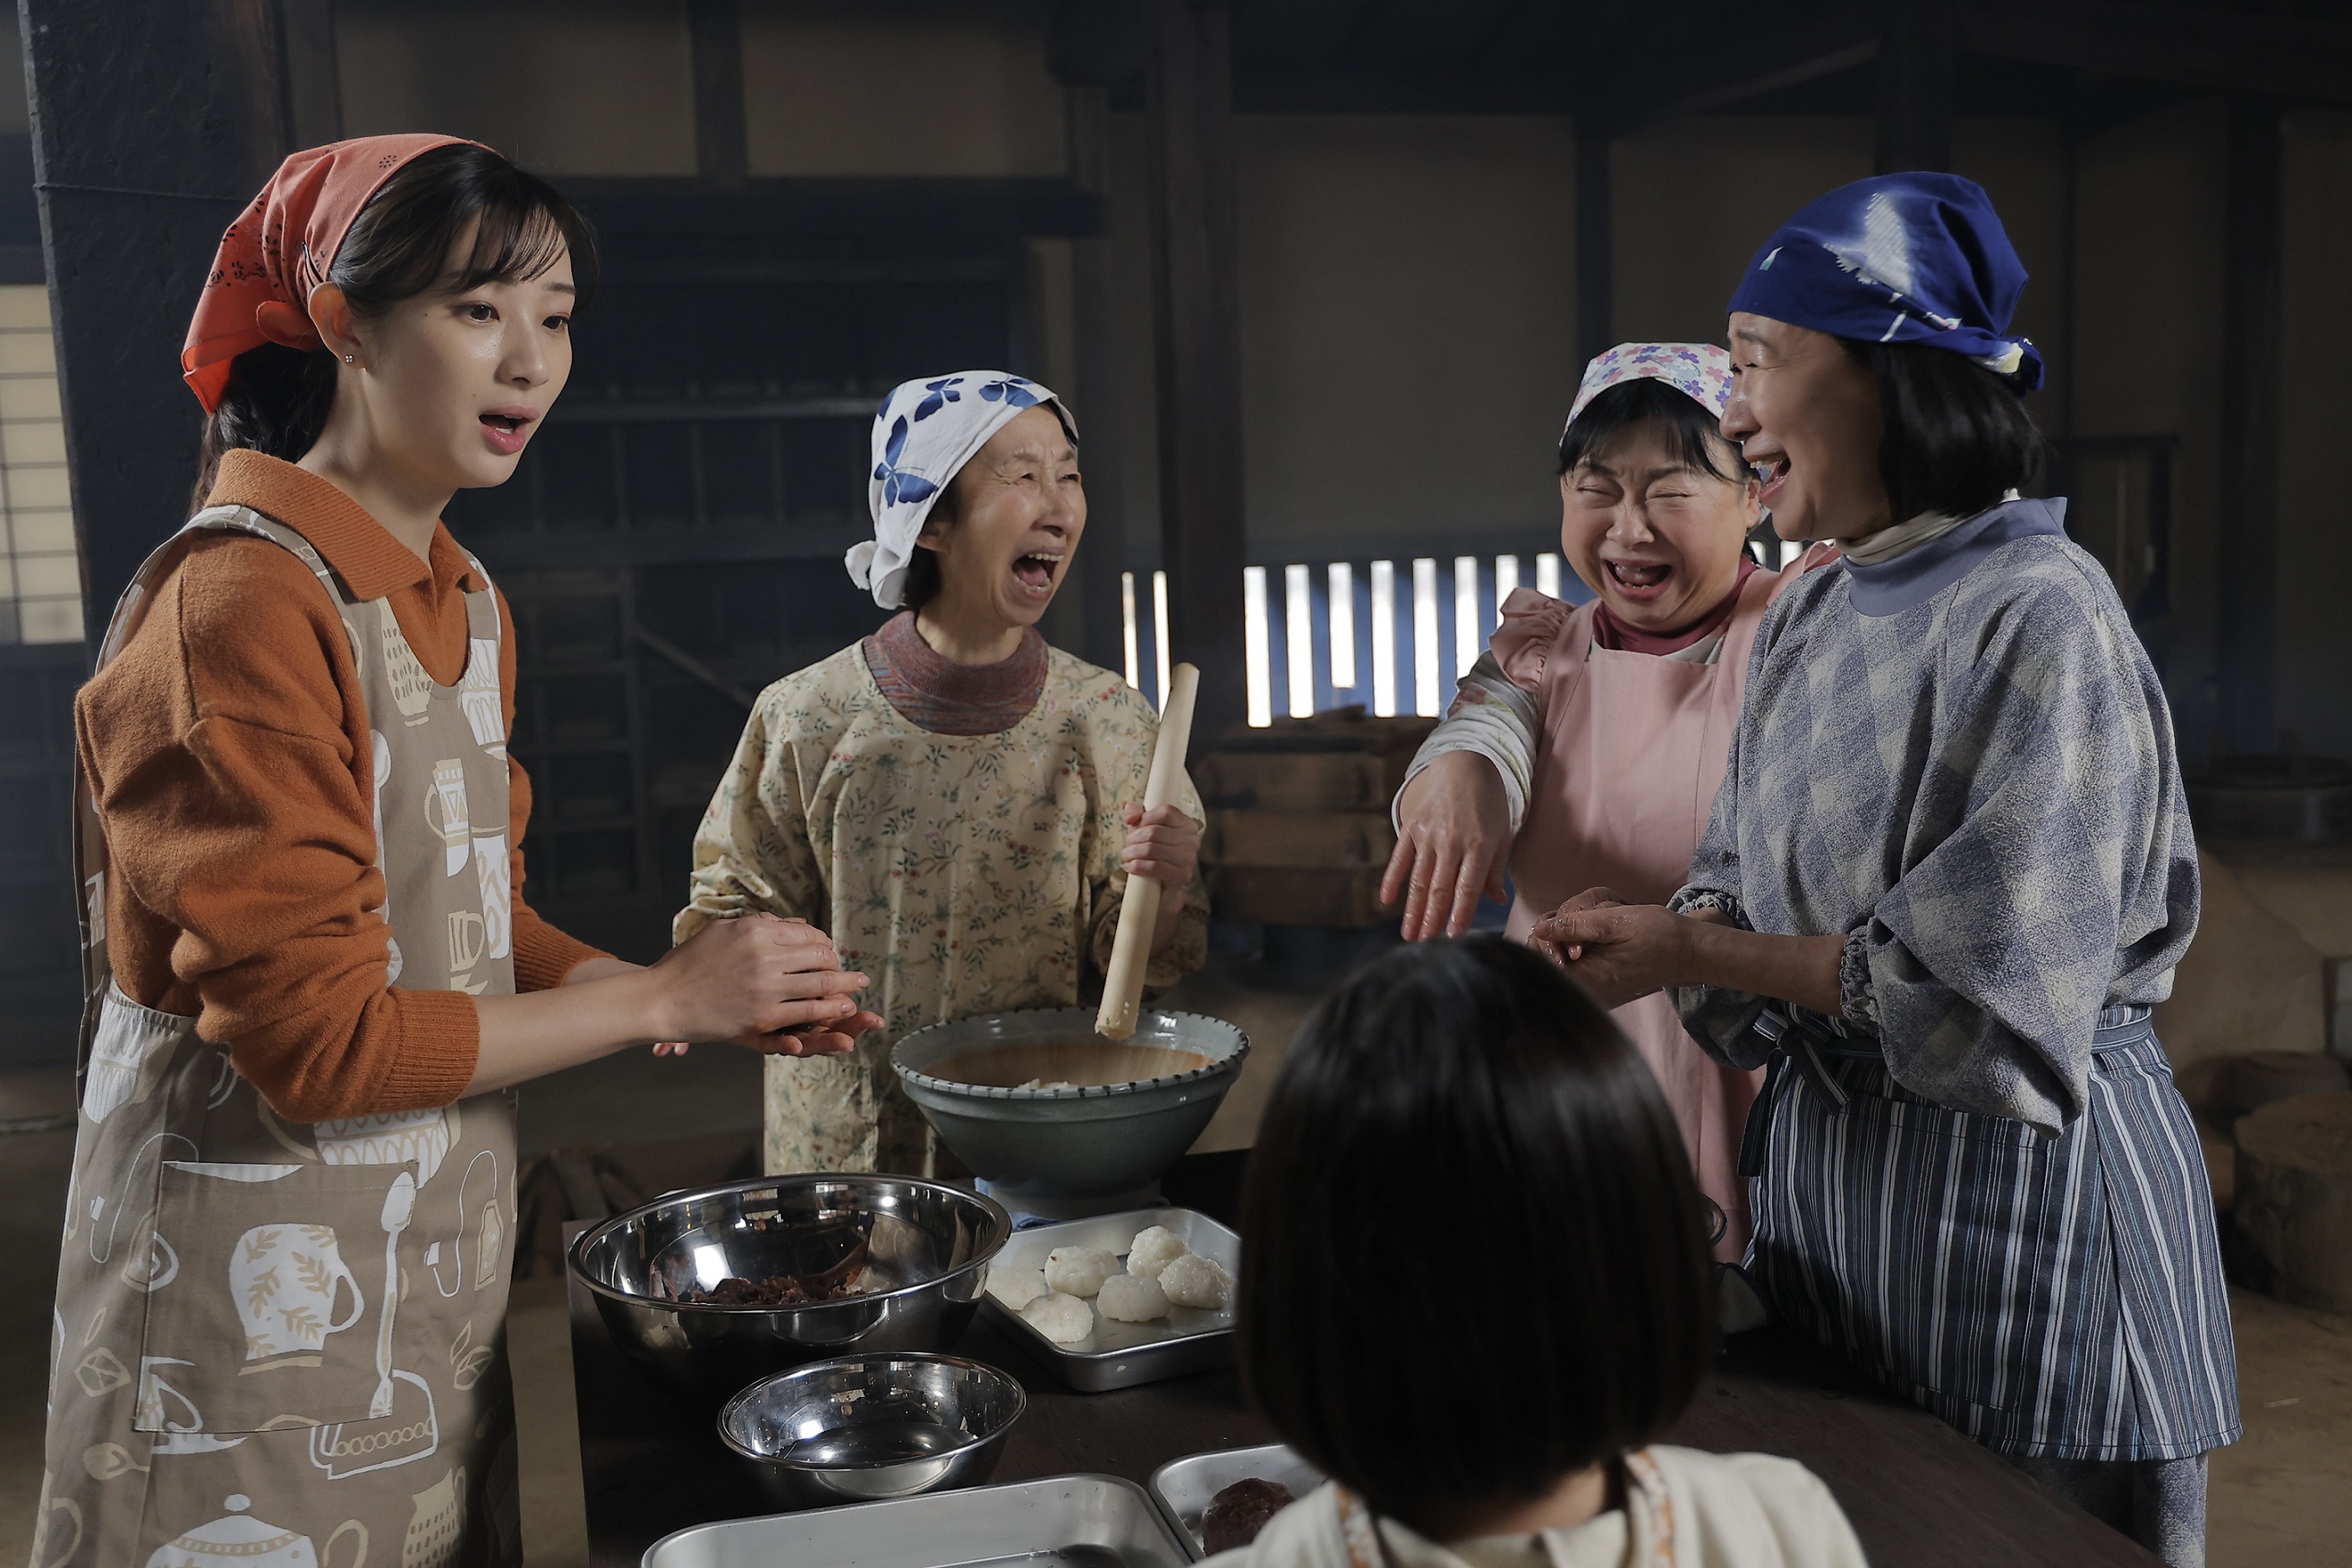 萬田久子主演「グランマの憂鬱」の“三婆”が楽しい - 産経ニュース